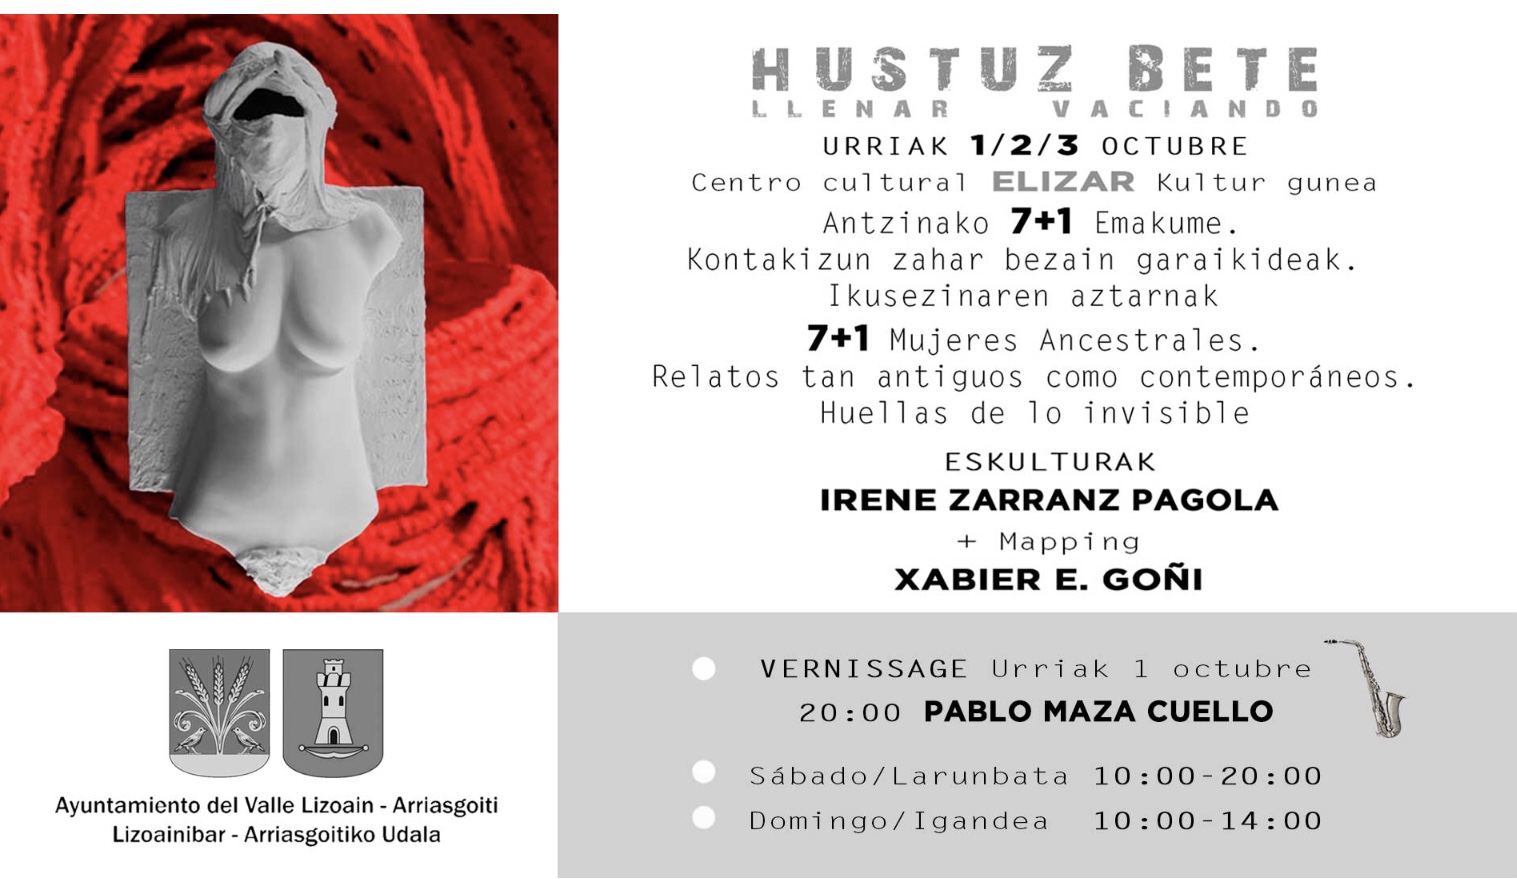 Exposición de escultura “Hustuz bete” en Elizar, Lizoain/”Hustuz bete” eskultura erakusketa Elizarren, Lizoainen